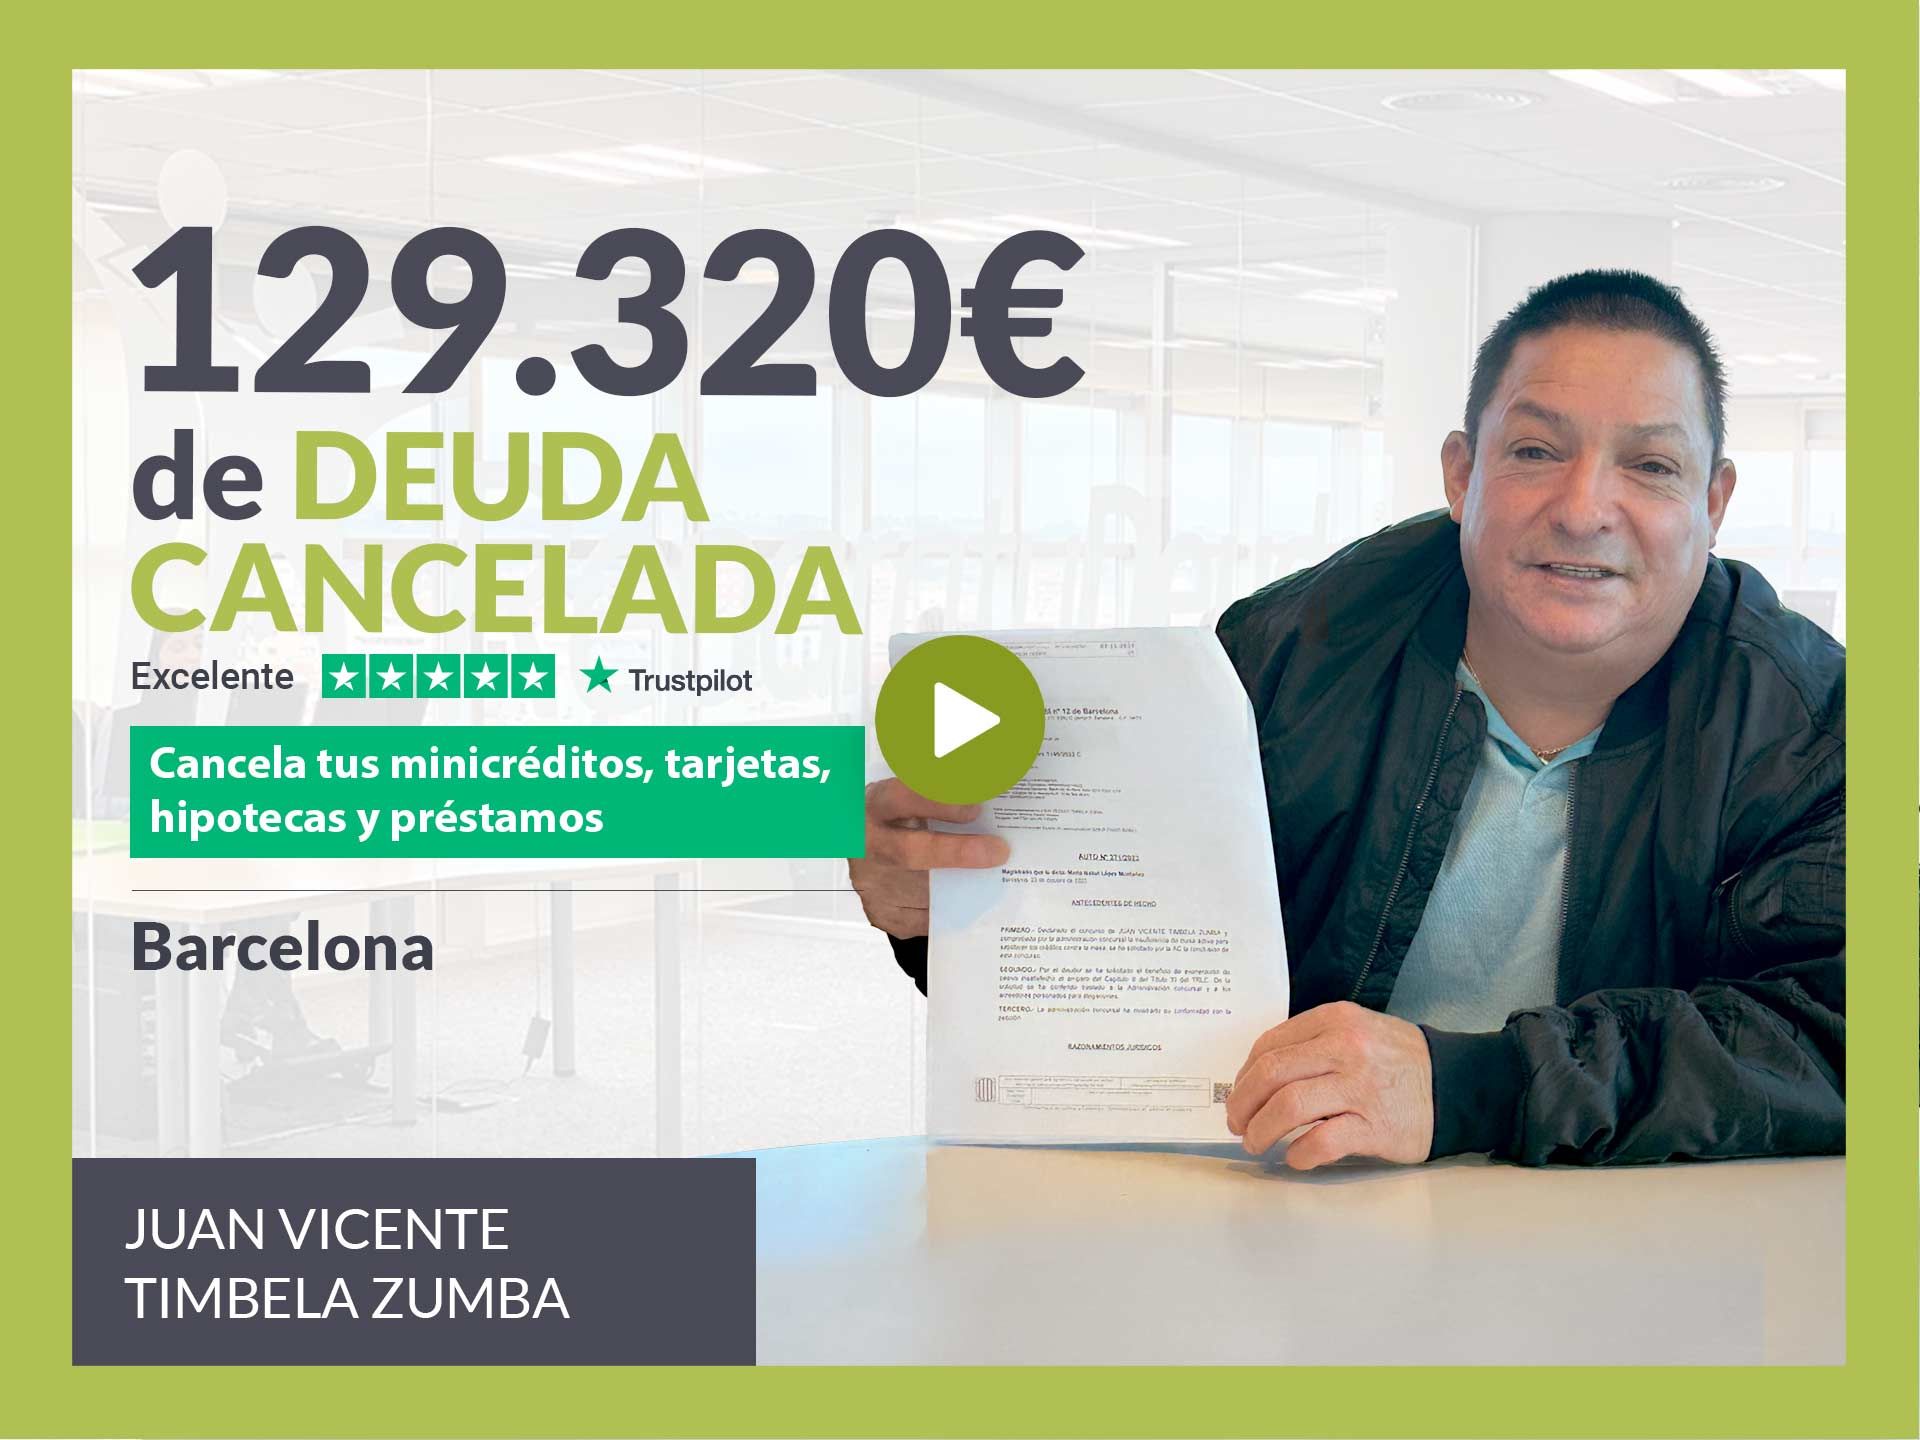 Repara tu Deuda Abogados cancela 129.320? en Barcelona (Catalunya) con la Ley de Segunda Oportunidad